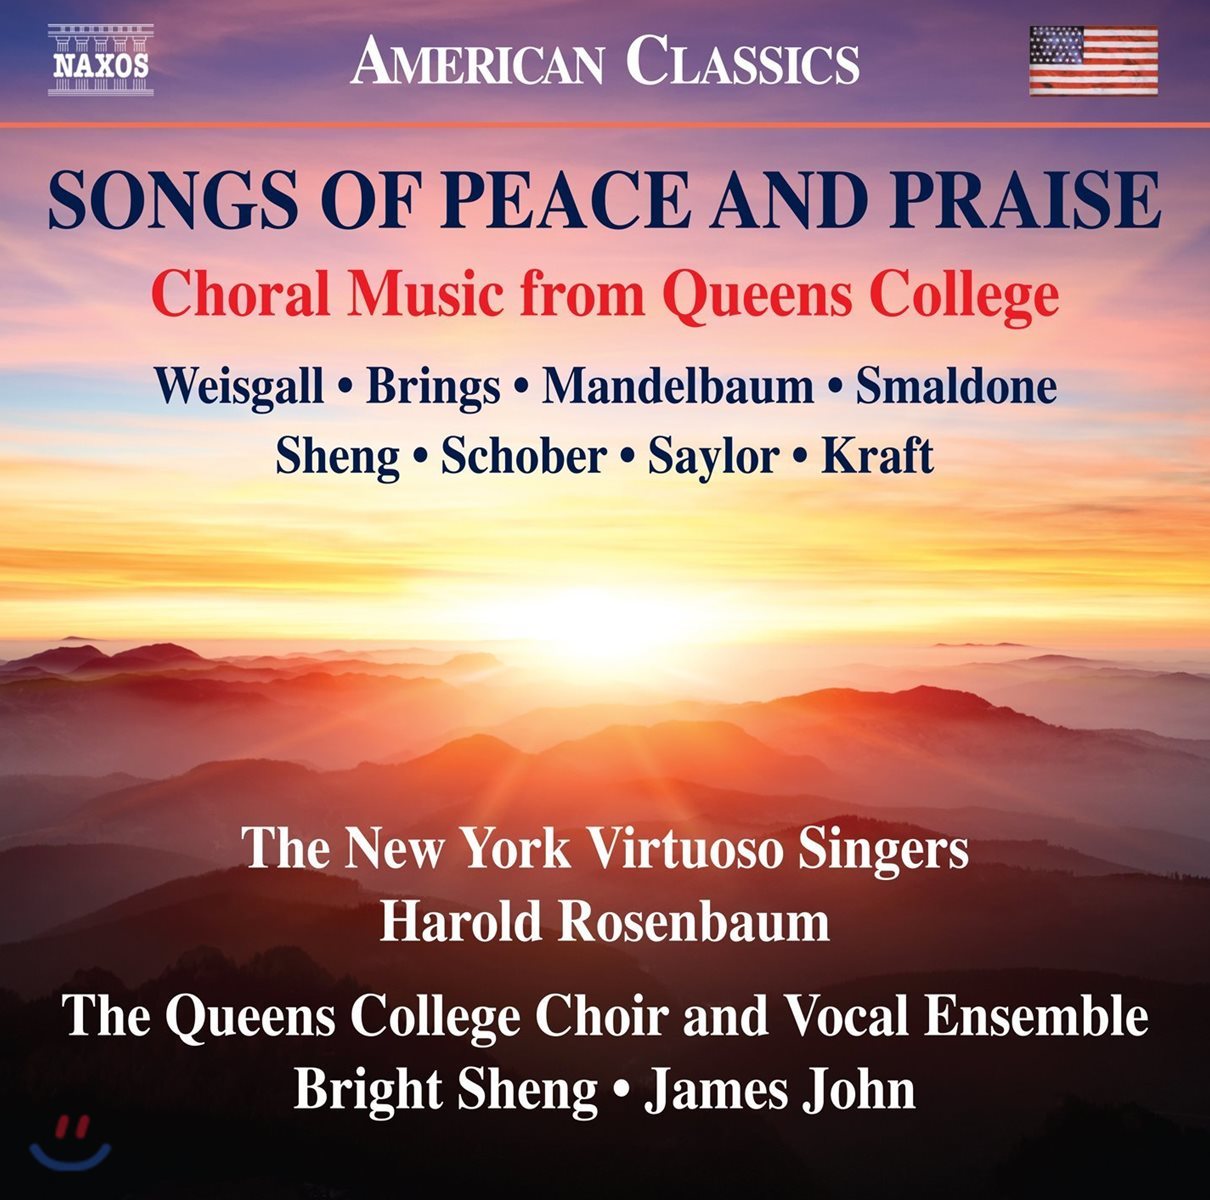 Queens College Choir &amp; Vocal Ensemble 평화와 찬양을 위한 노래들 - 퀸스 컬리지의 합창 음악 (Songs Of Peace And Praise)